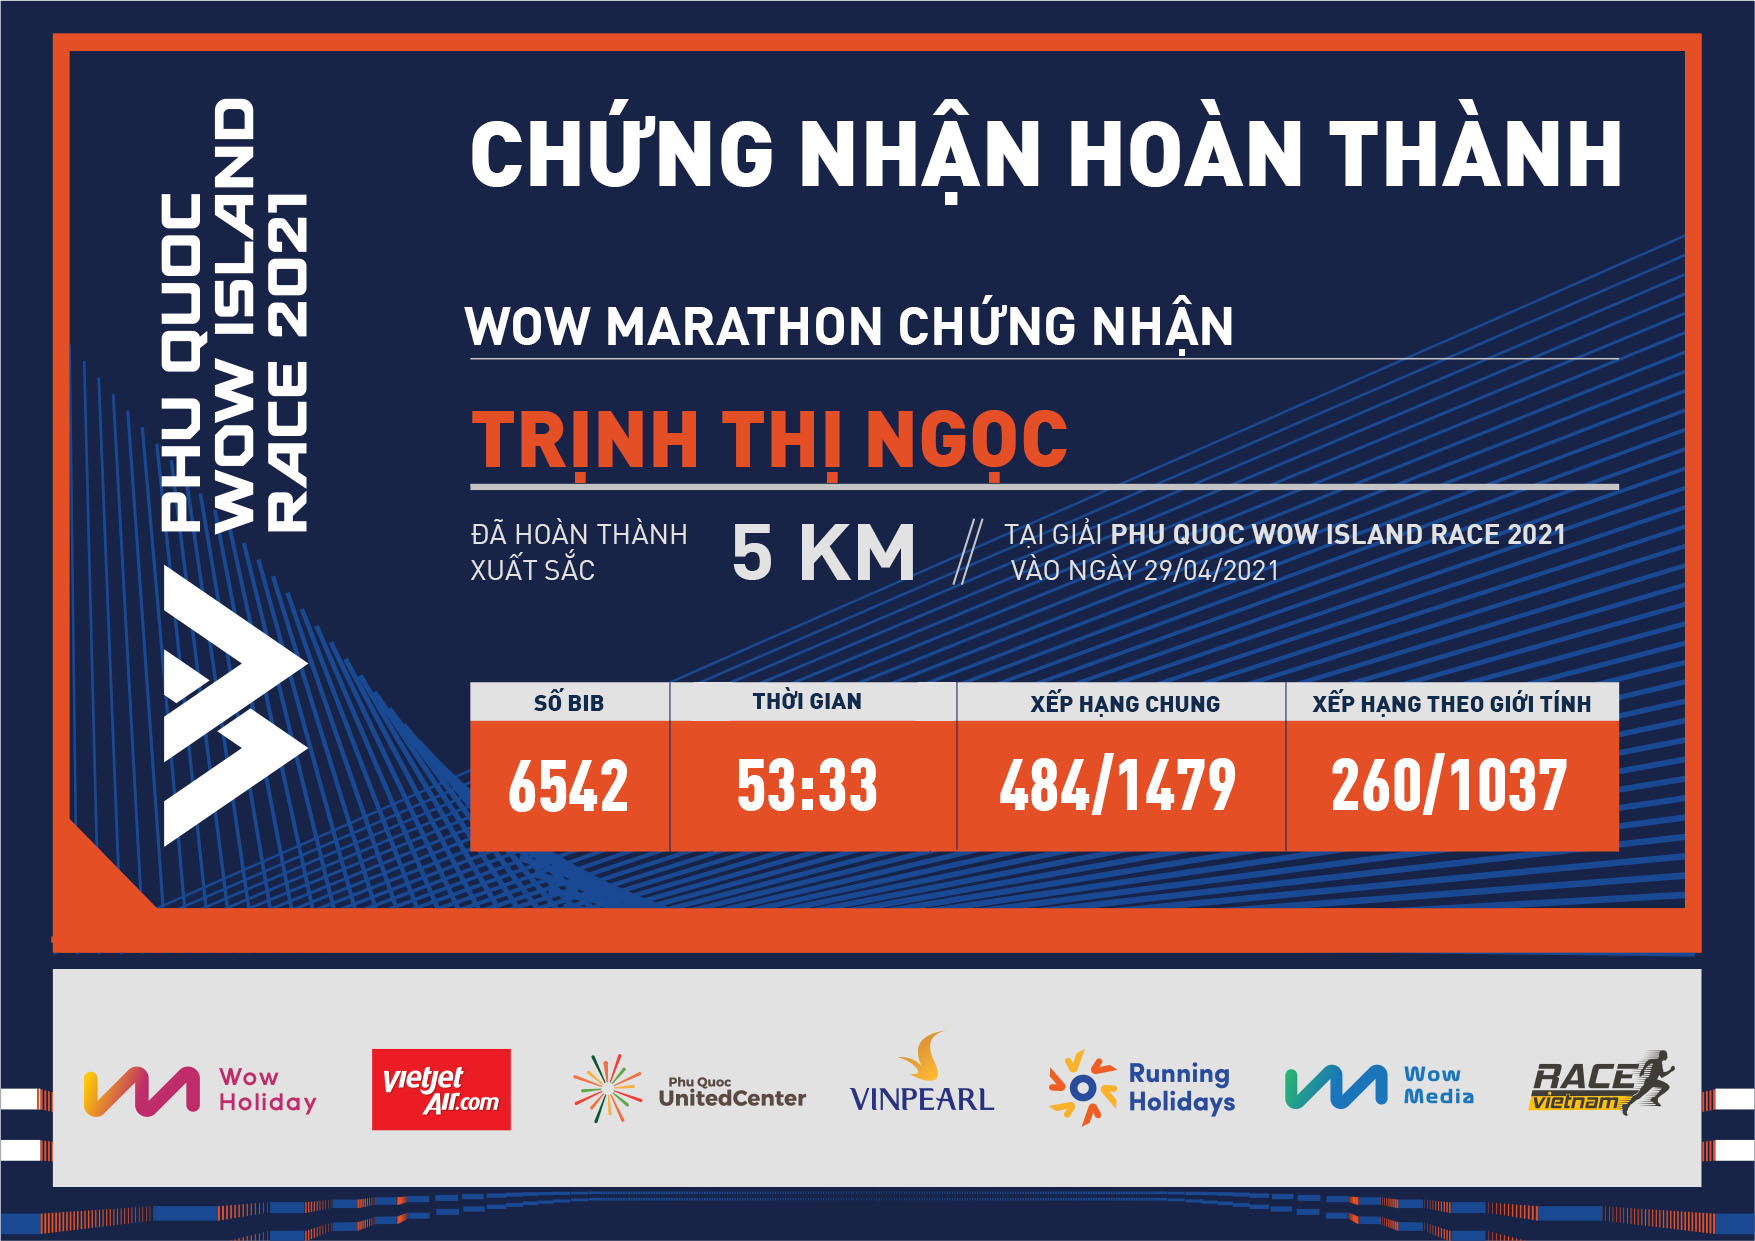 6542 - Trịnh Thị Ngọc